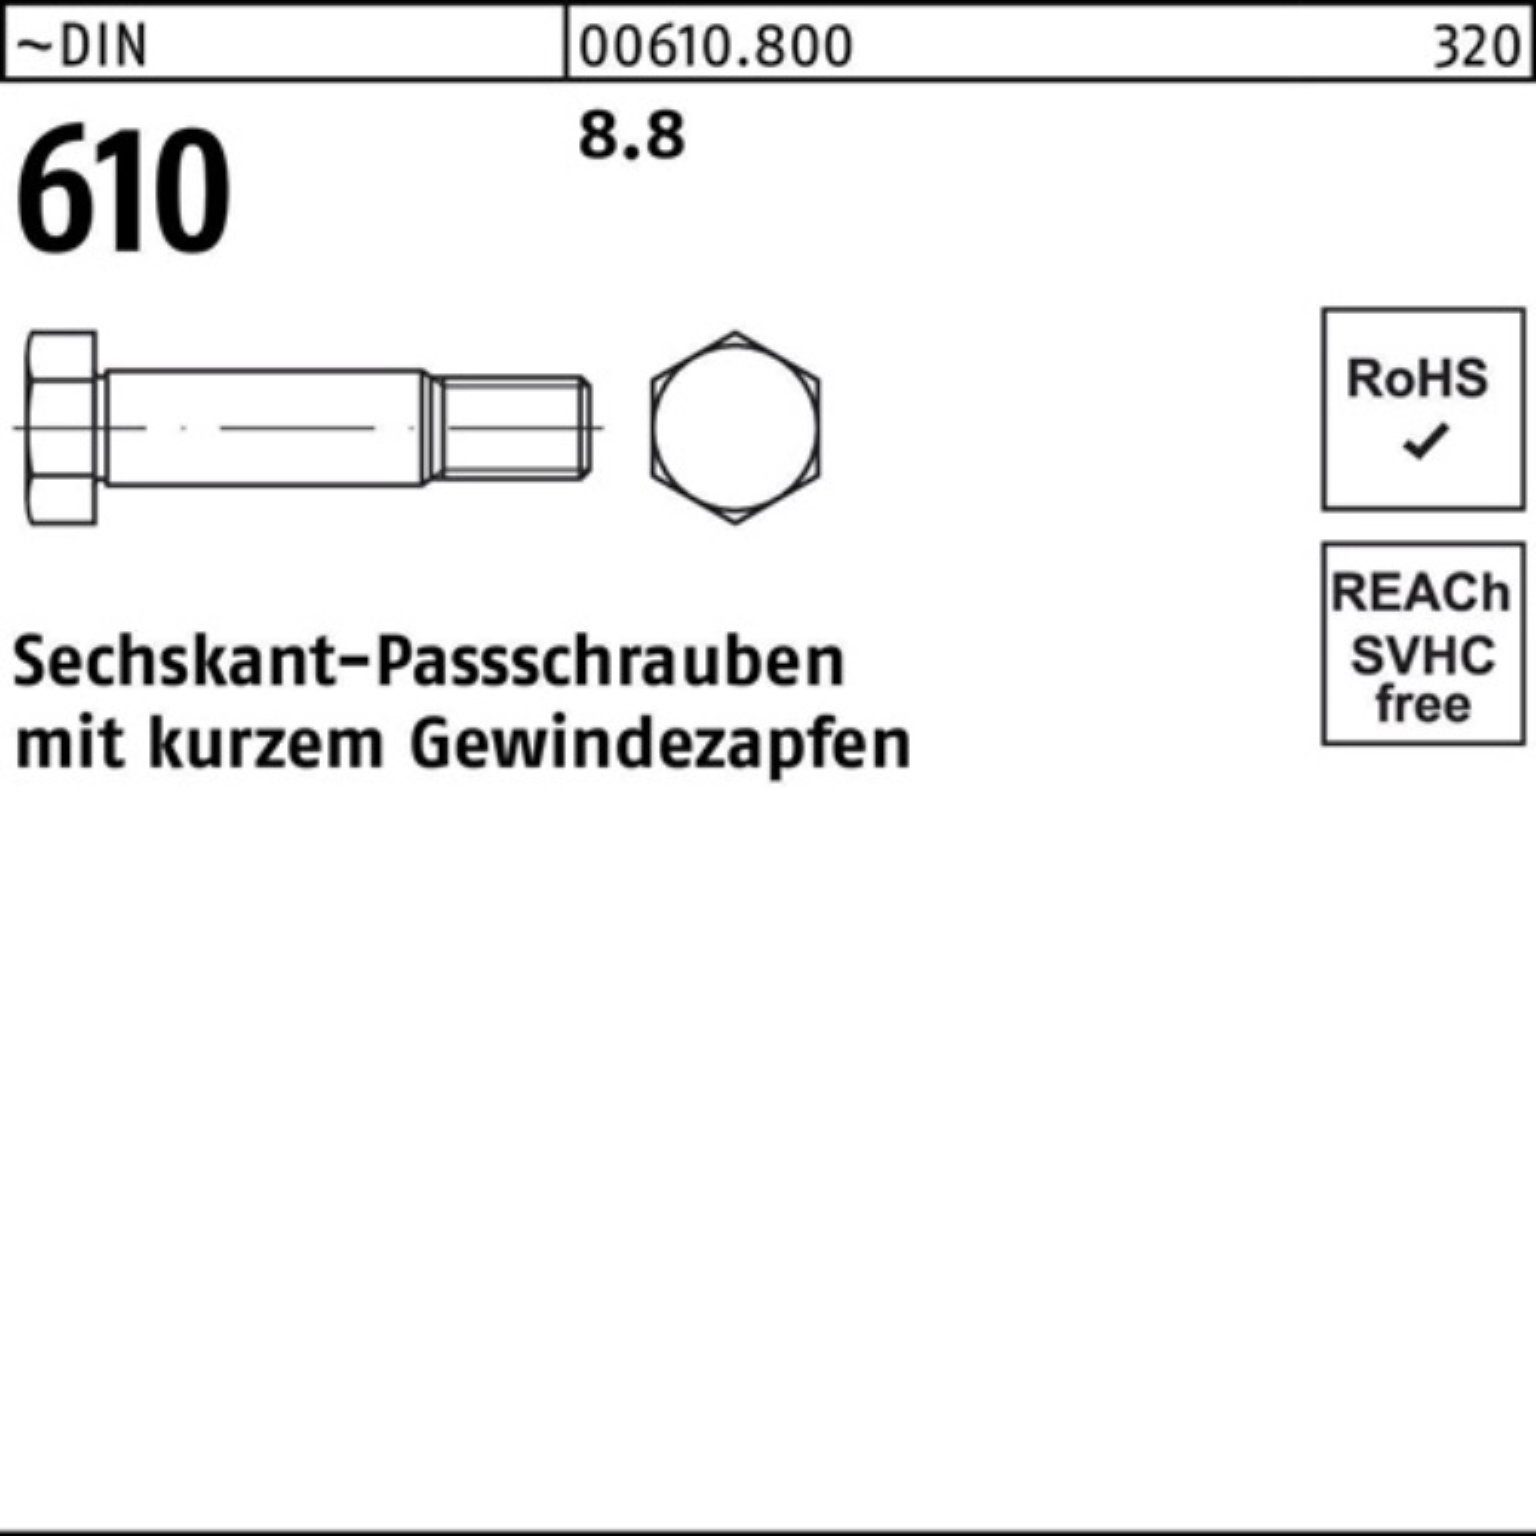 Reyher Schraube Sechskantpassschraube 55 kurzem Gewindezapfen DIN 100er 610 Pack M20x